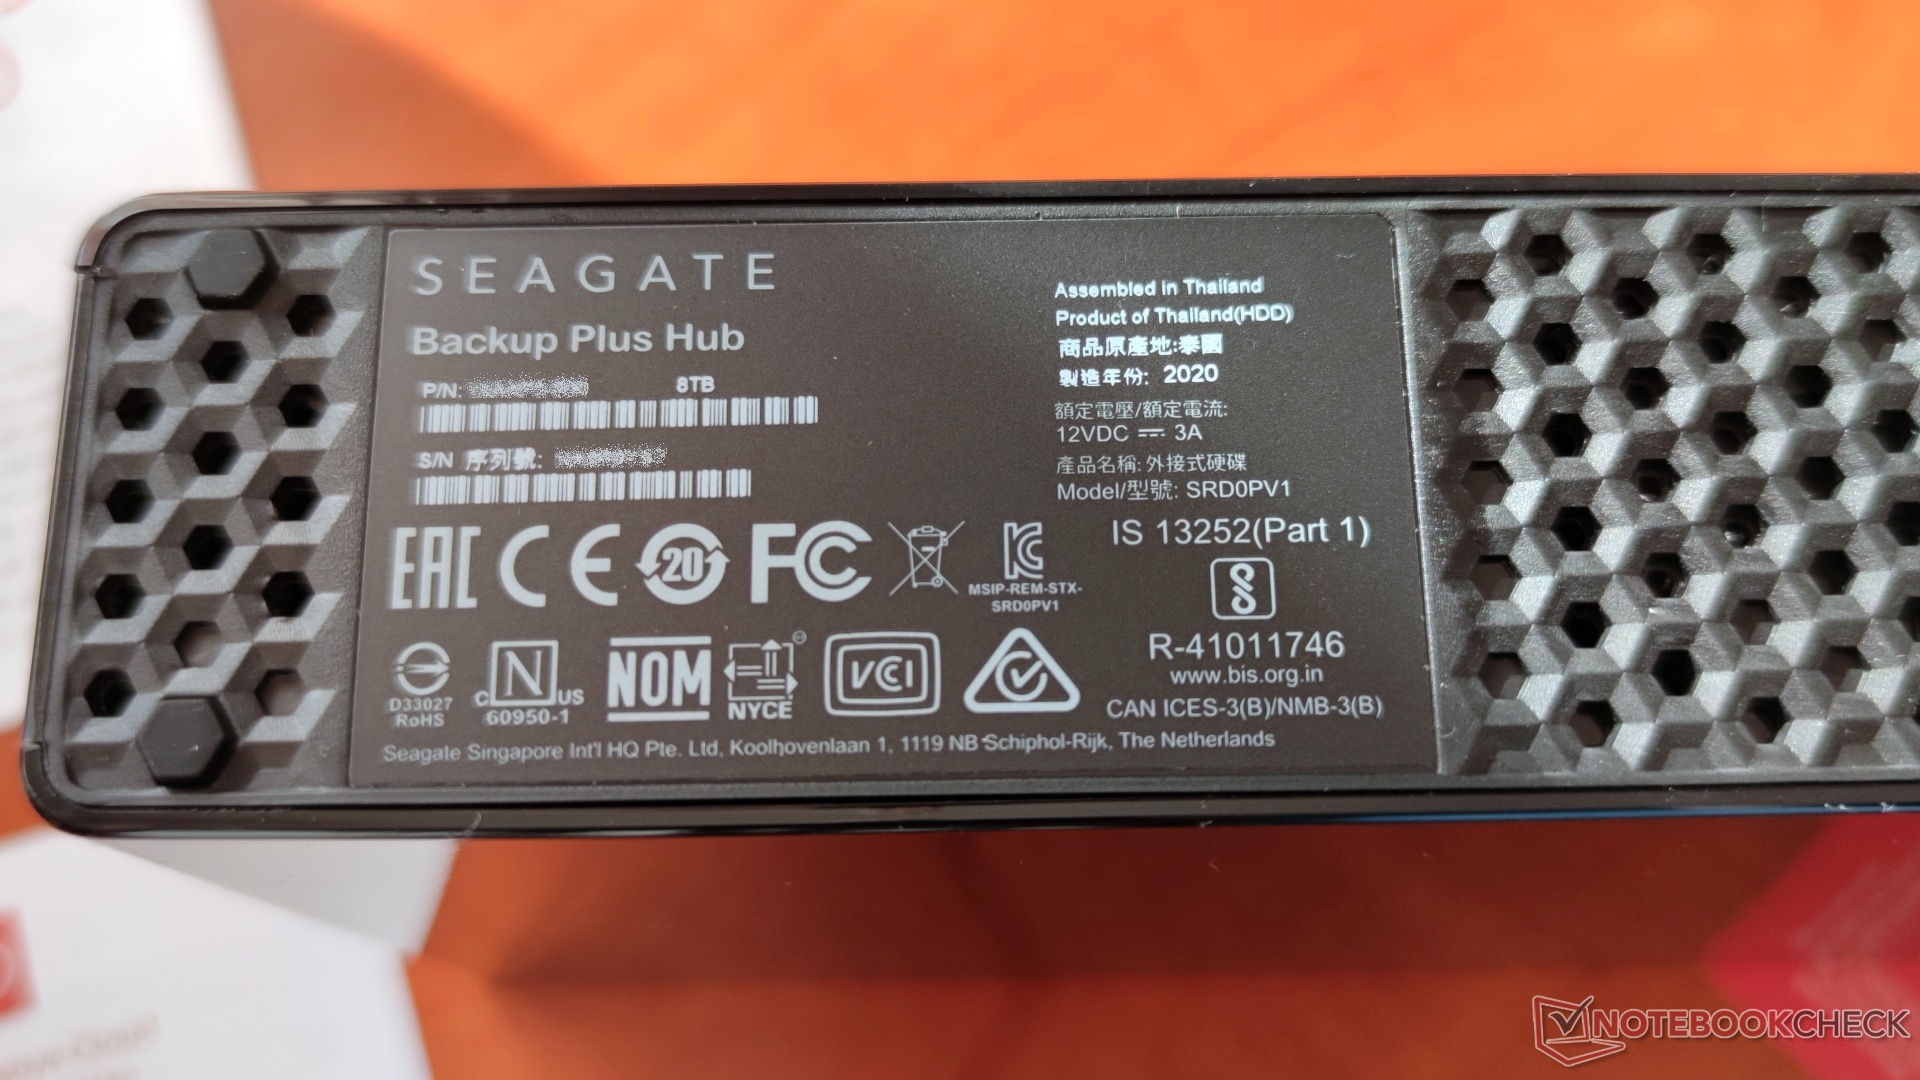 Prueba del Backup Plus Hub de 8 TB de Seagate: Un Hub USB 3.0 y un Barracuda de 5400 RPM combinados con resultados decentes Notebookcheck.org